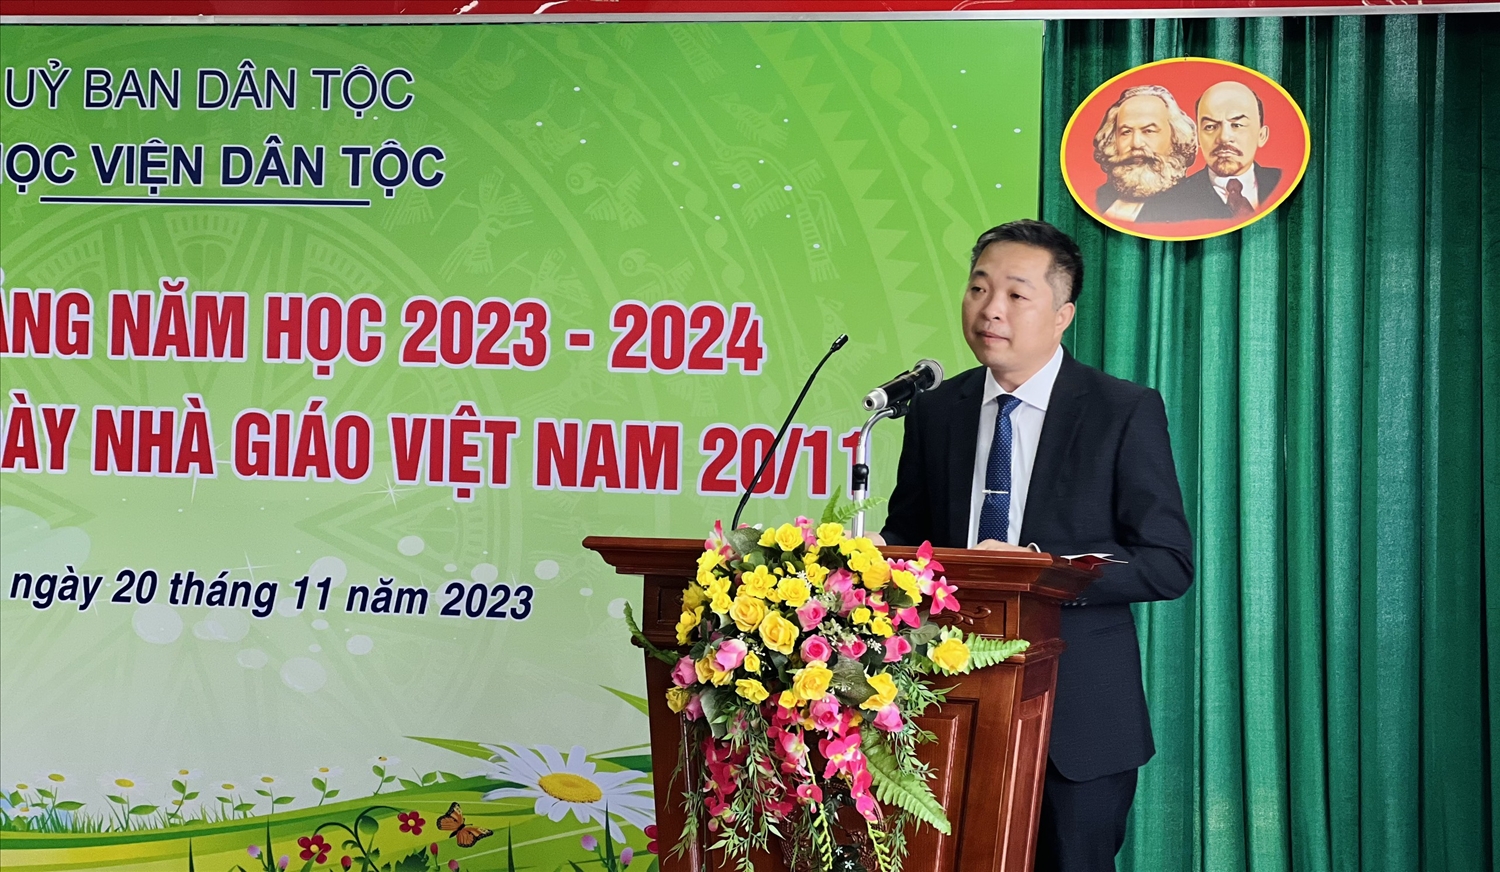 Học viện Dân tộc tổ chức lễ kỷ niệm Ngày Nhà giáo Việt Nam 20/11 và Khai giảng năm học 2023-2024